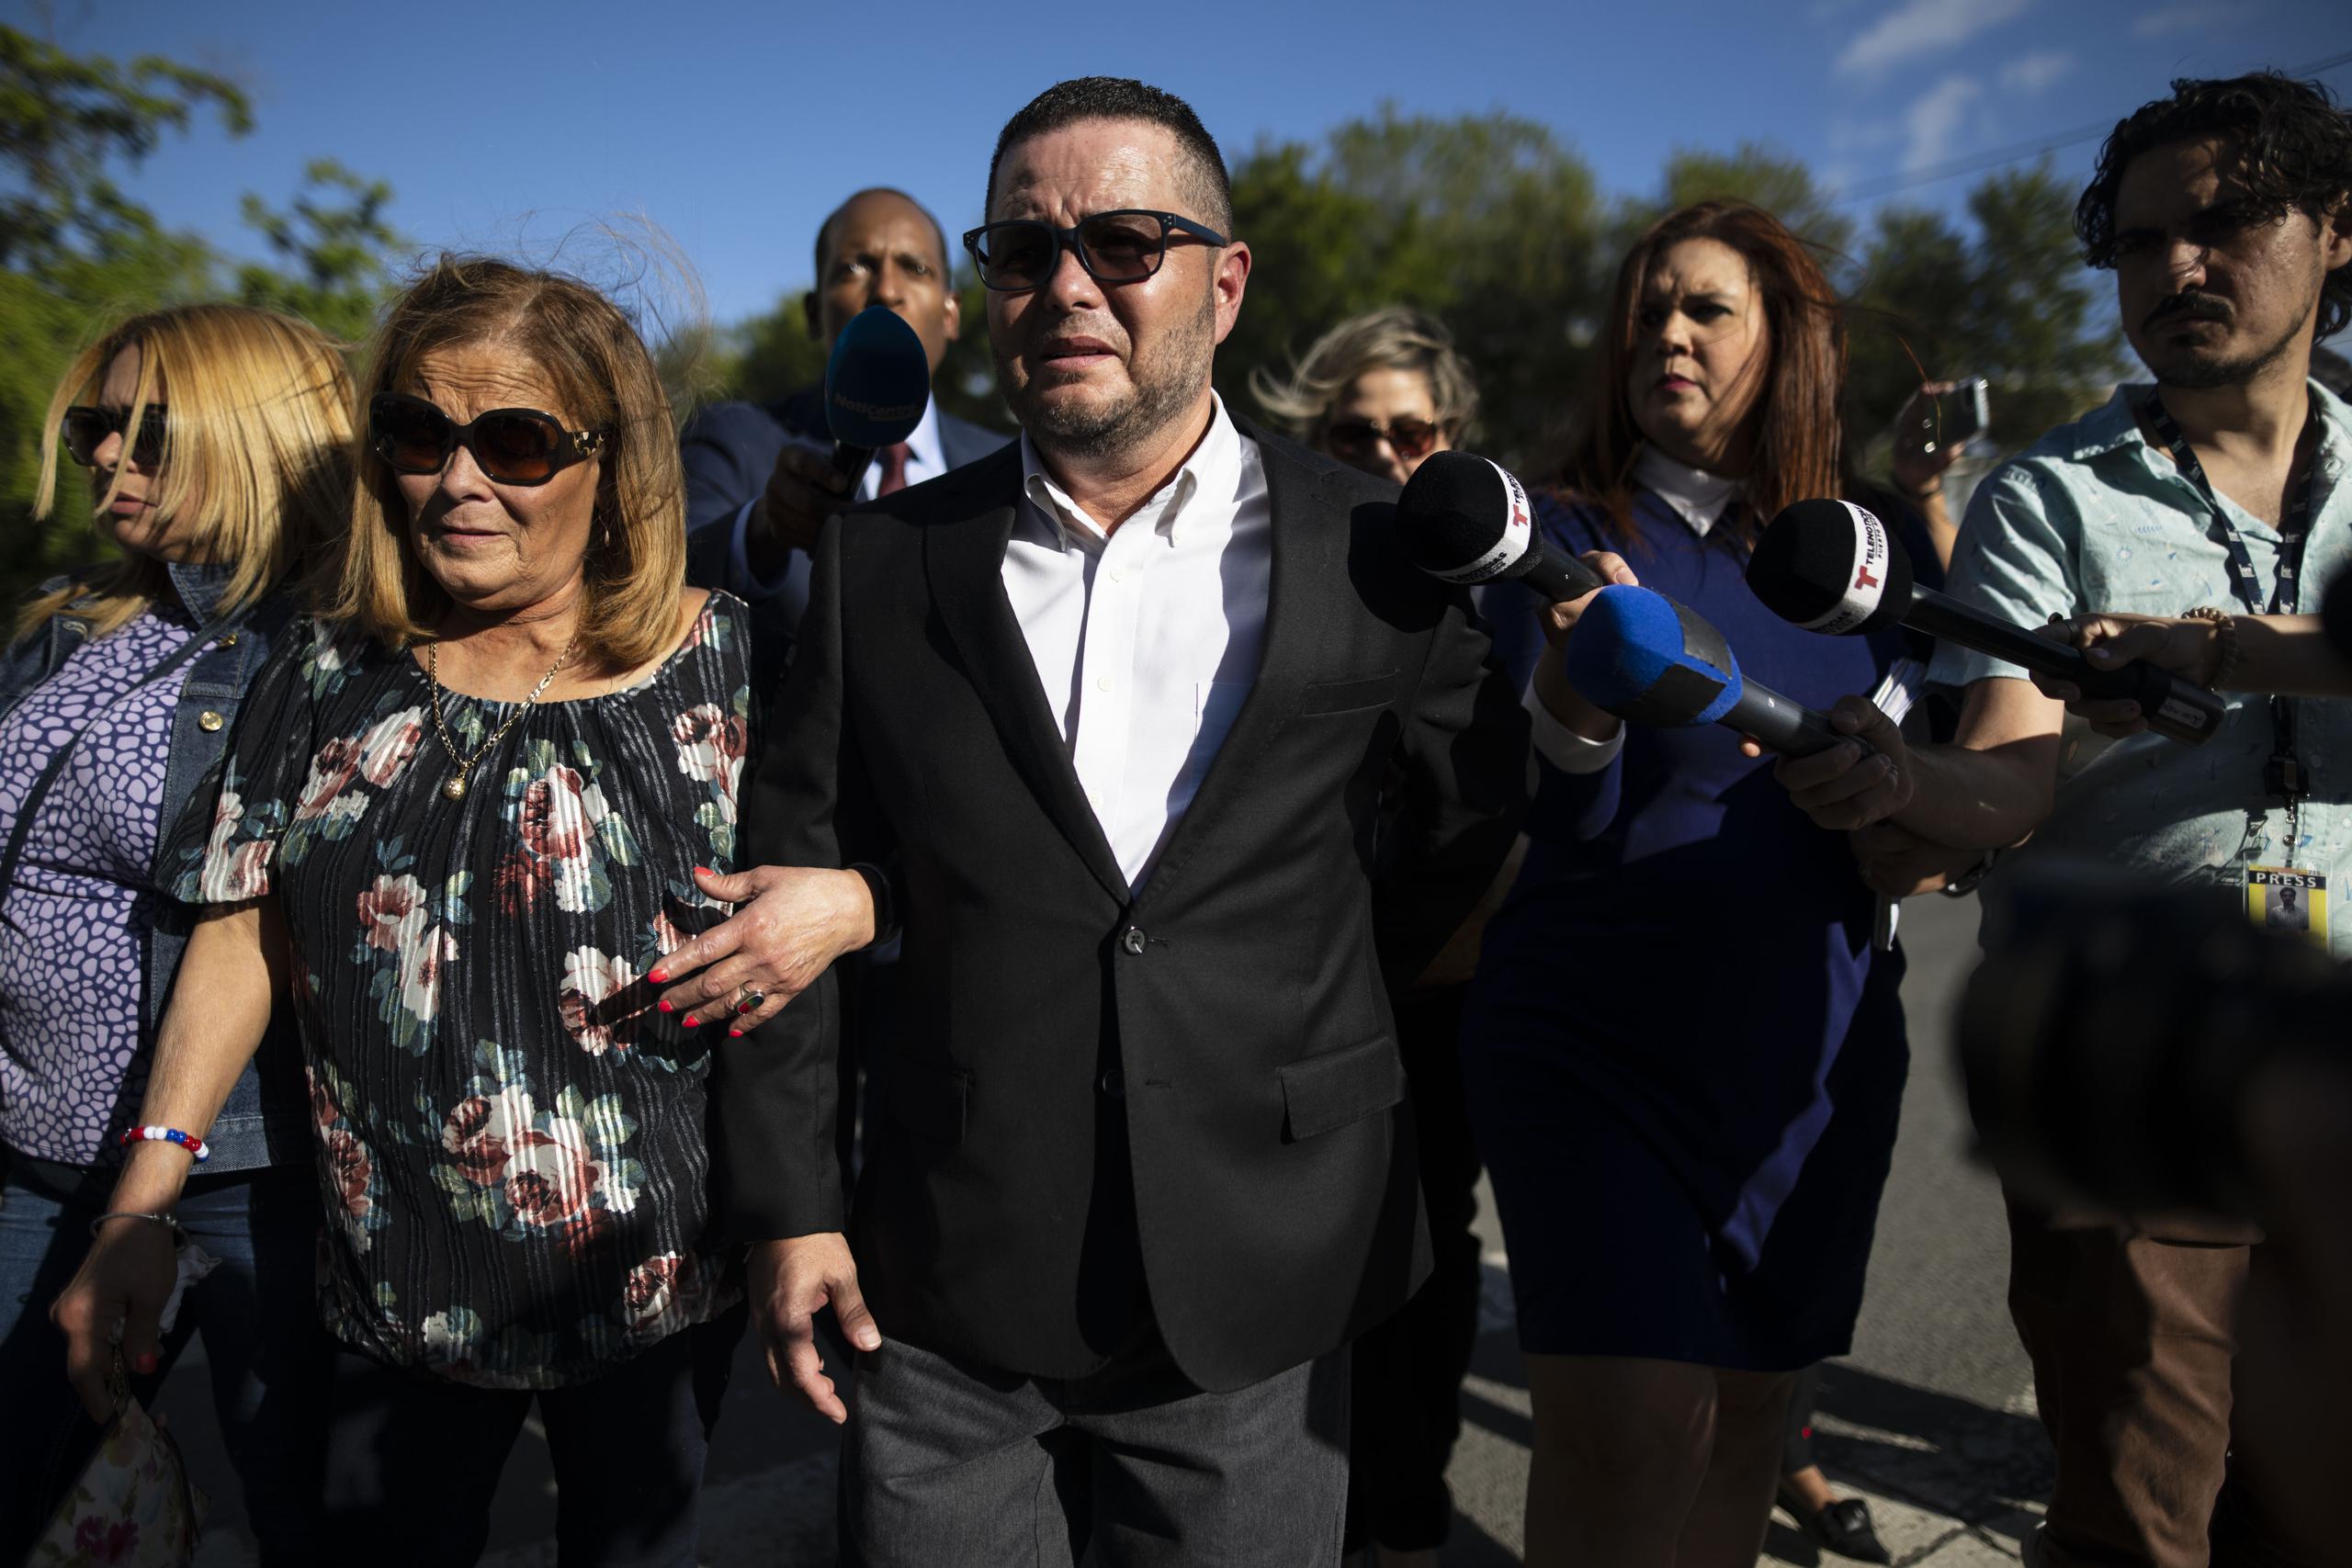 Con un lento caminar, Pérez Otero salió del tribunal federal rodeado de un séquito compuesto por familiares y abogados.

